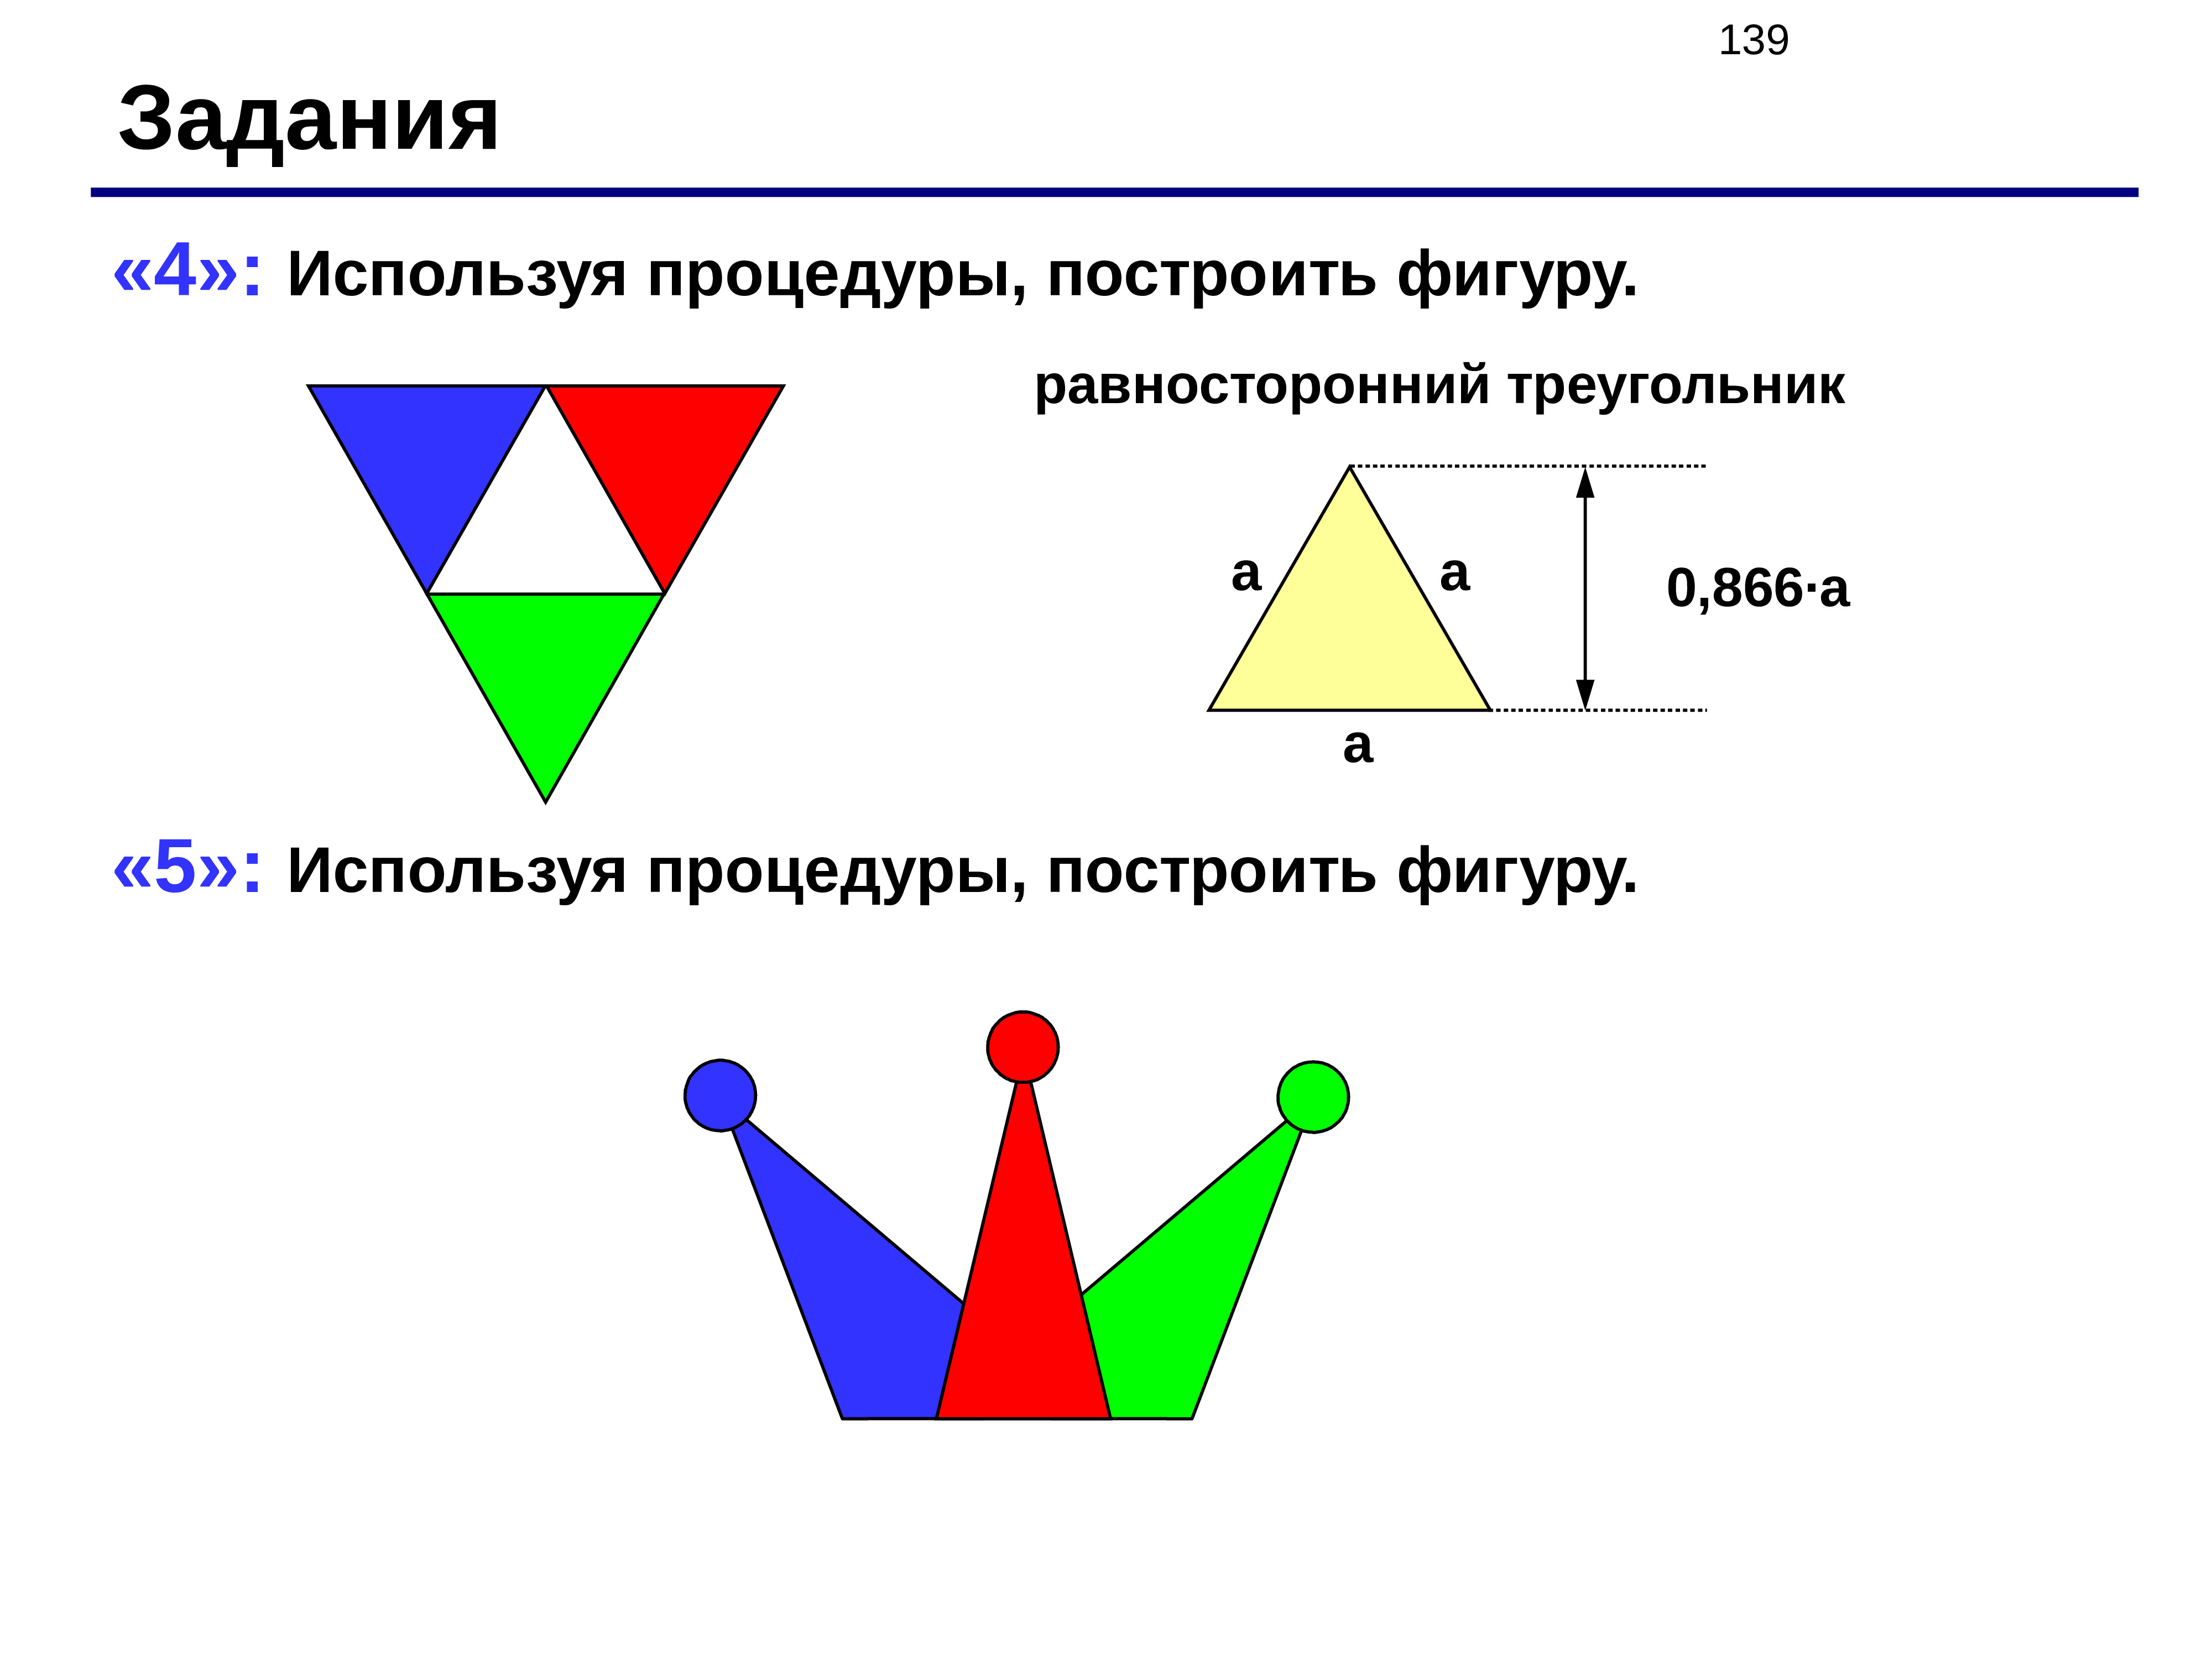 Задачи на равносторонний треугольник. Используя процедуры построить фигуру. 5:Используя процедуры,построить фигуру. Постройте рисунок используя процедуру. Задача procedure 5. используя процедуры, построить фигуру:.